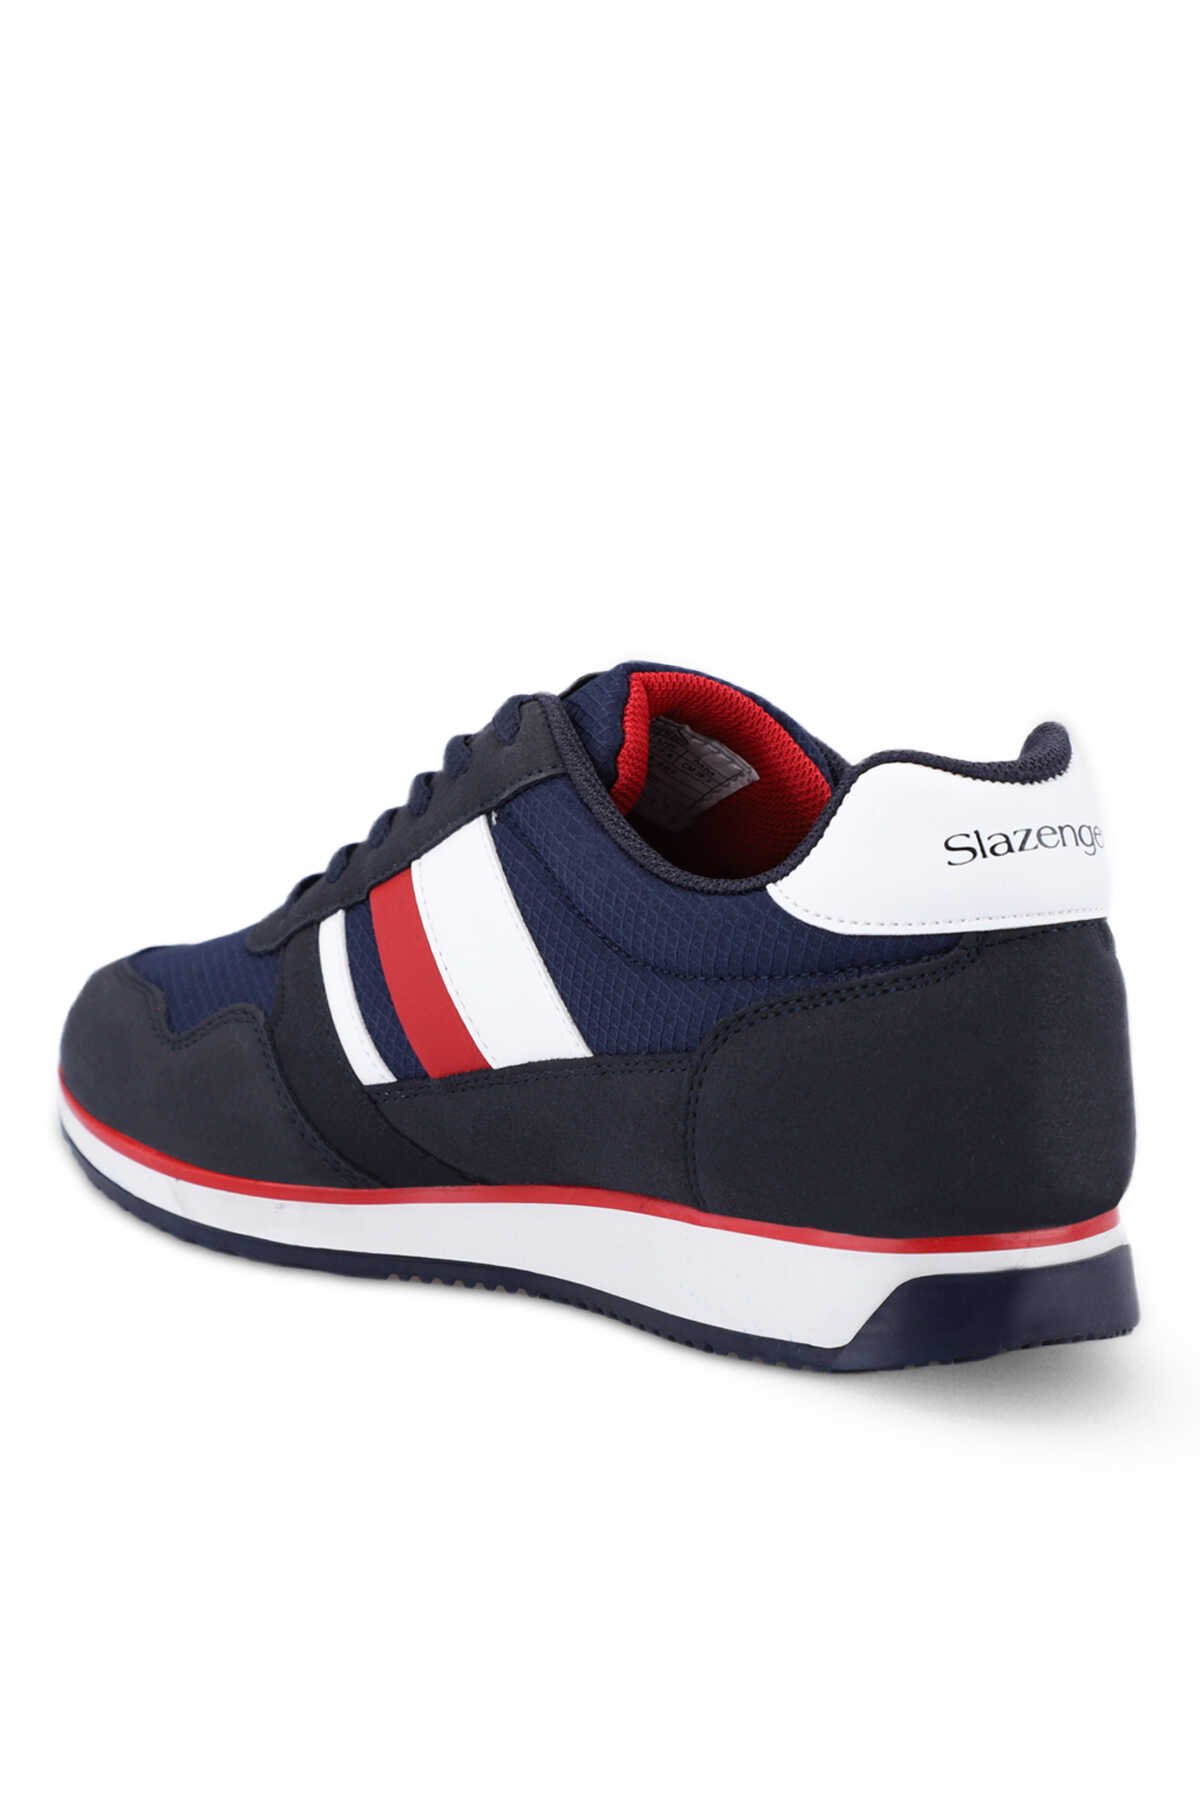 ORIGIN I Sneaker Erkek Ayakkabı Lacivert / Kırmızı